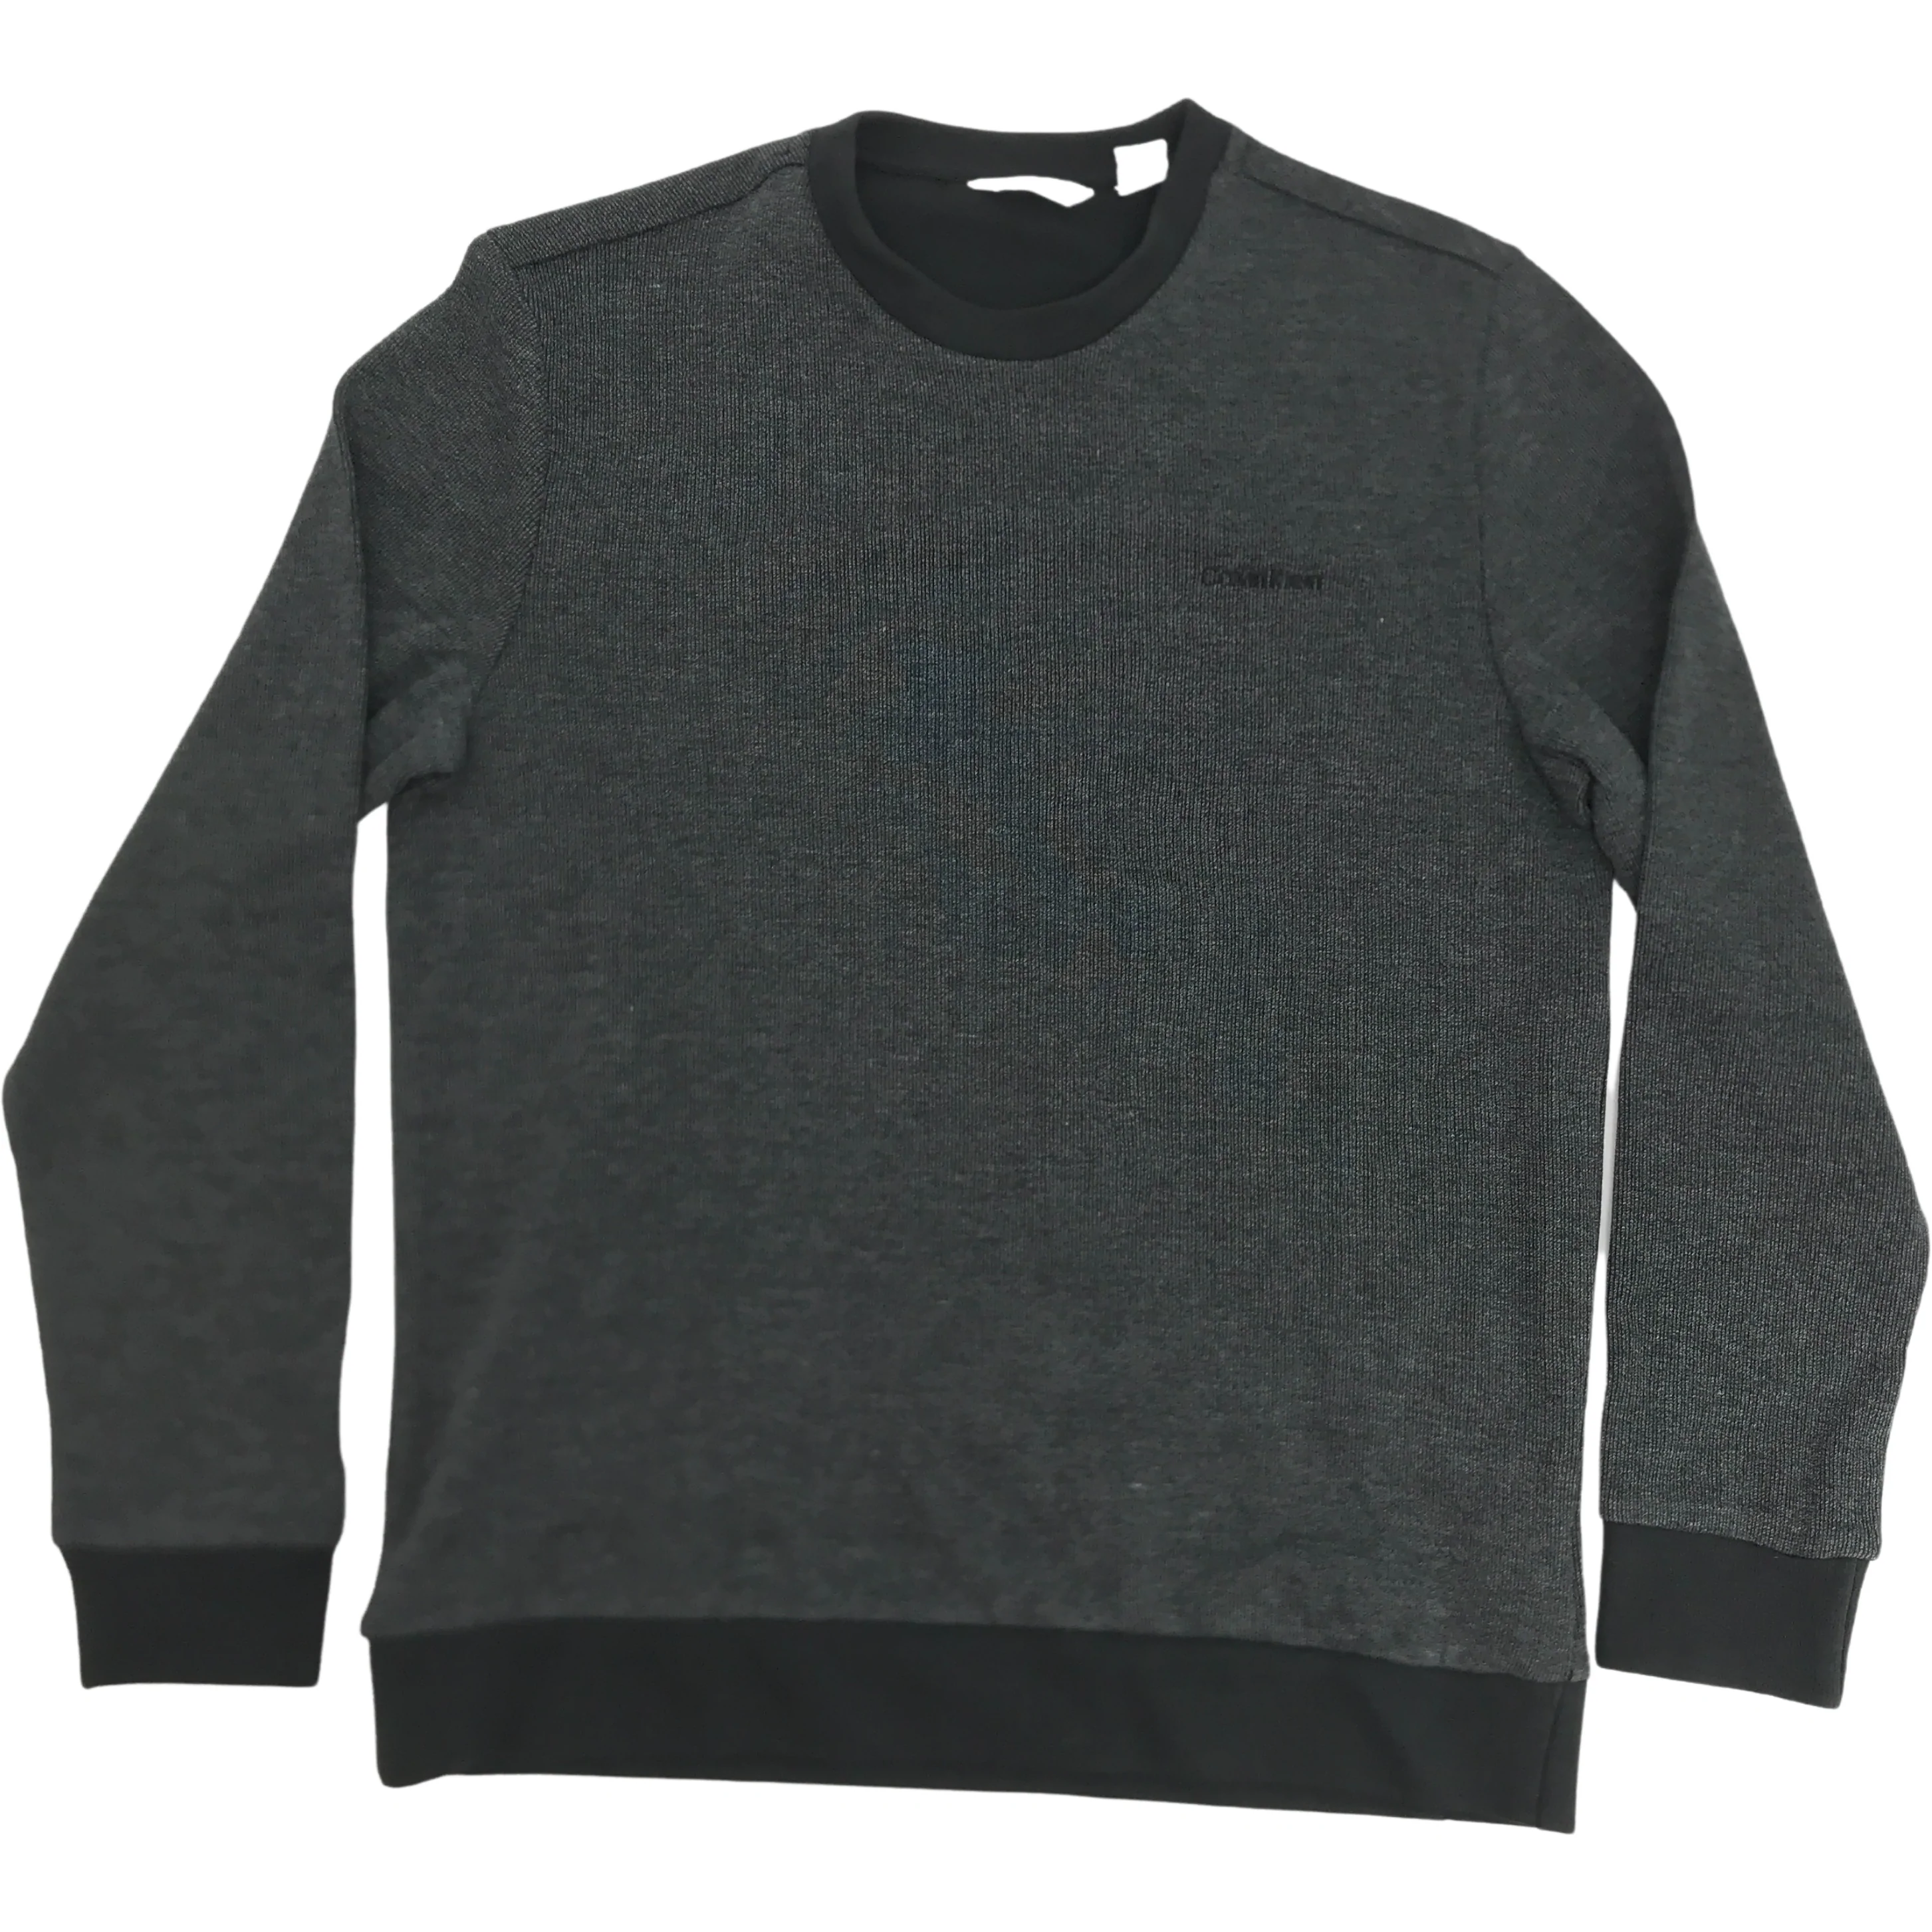 Calvin Klein Men's Sweater / Long Sleeve Shirt / Grey & Black / Various Sizes